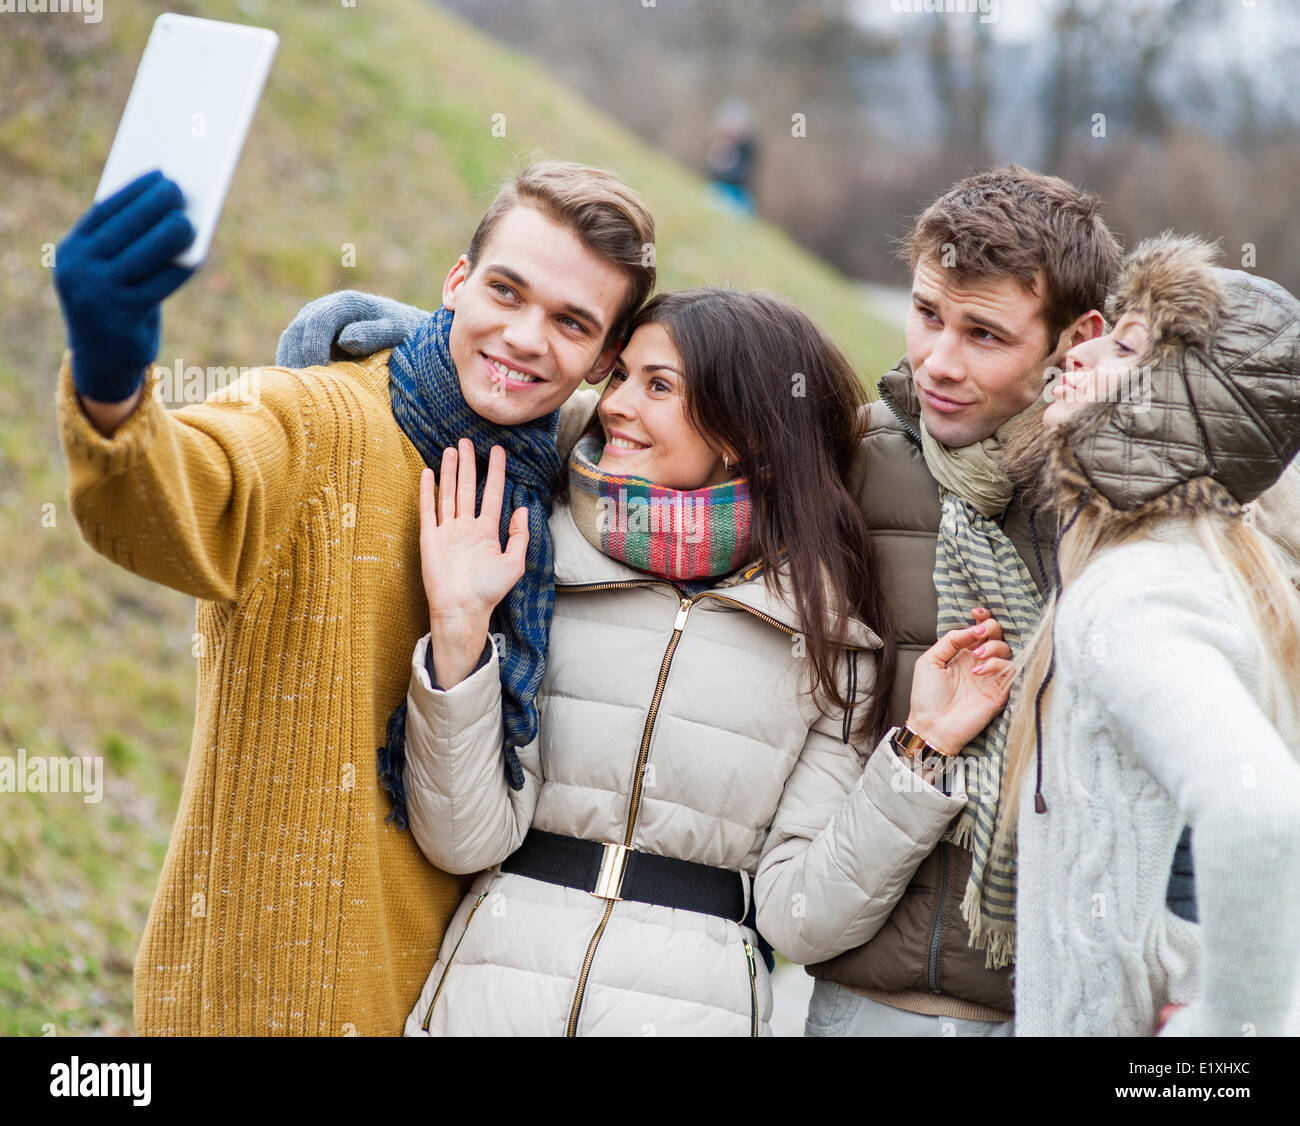 Glückliche Paare unter Selbstportrait durch Handy im park Stockfoto